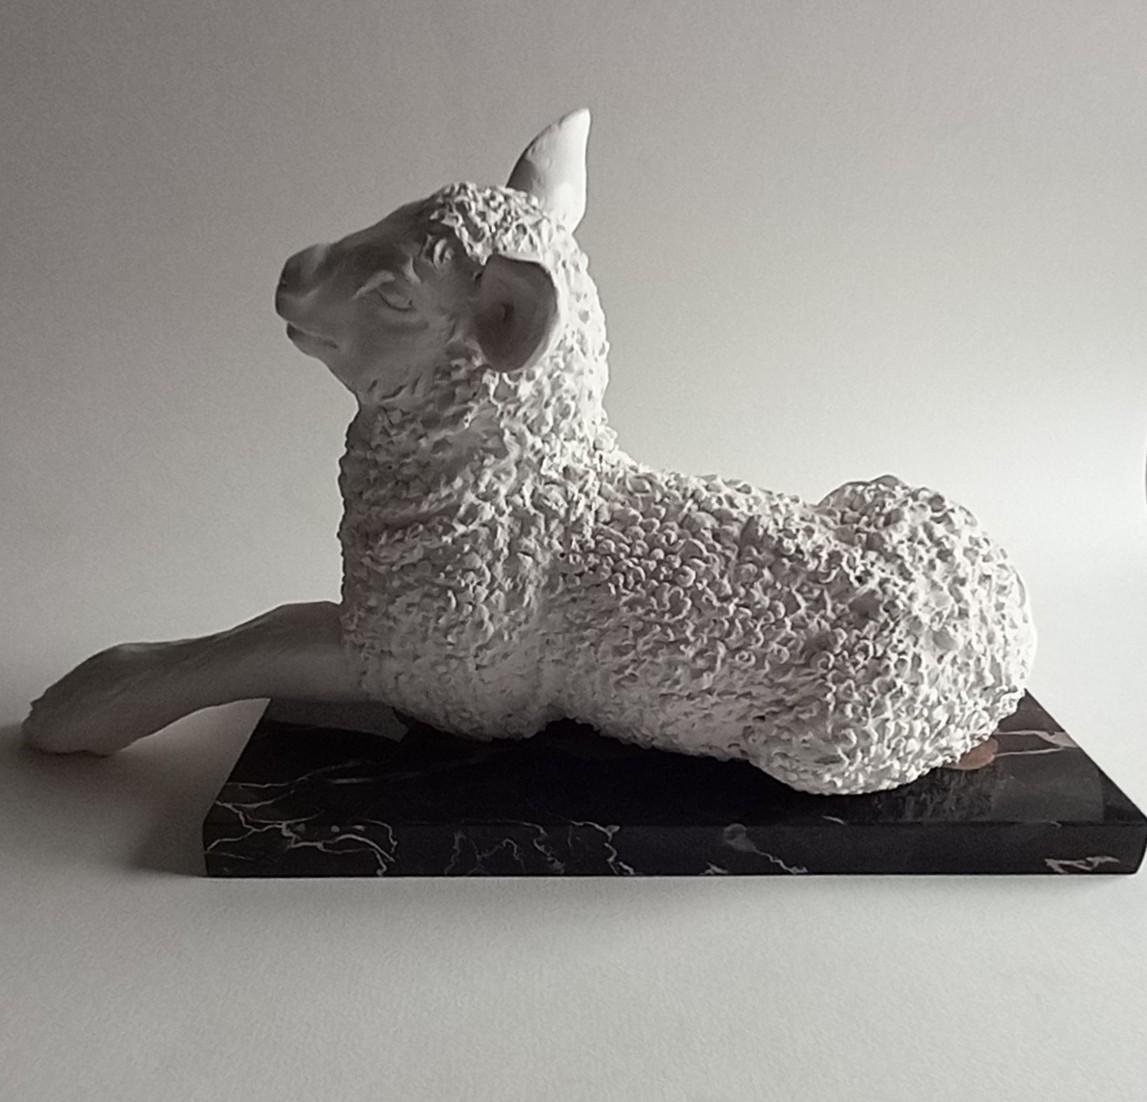 Lamm – Sculpture von Barry Davies